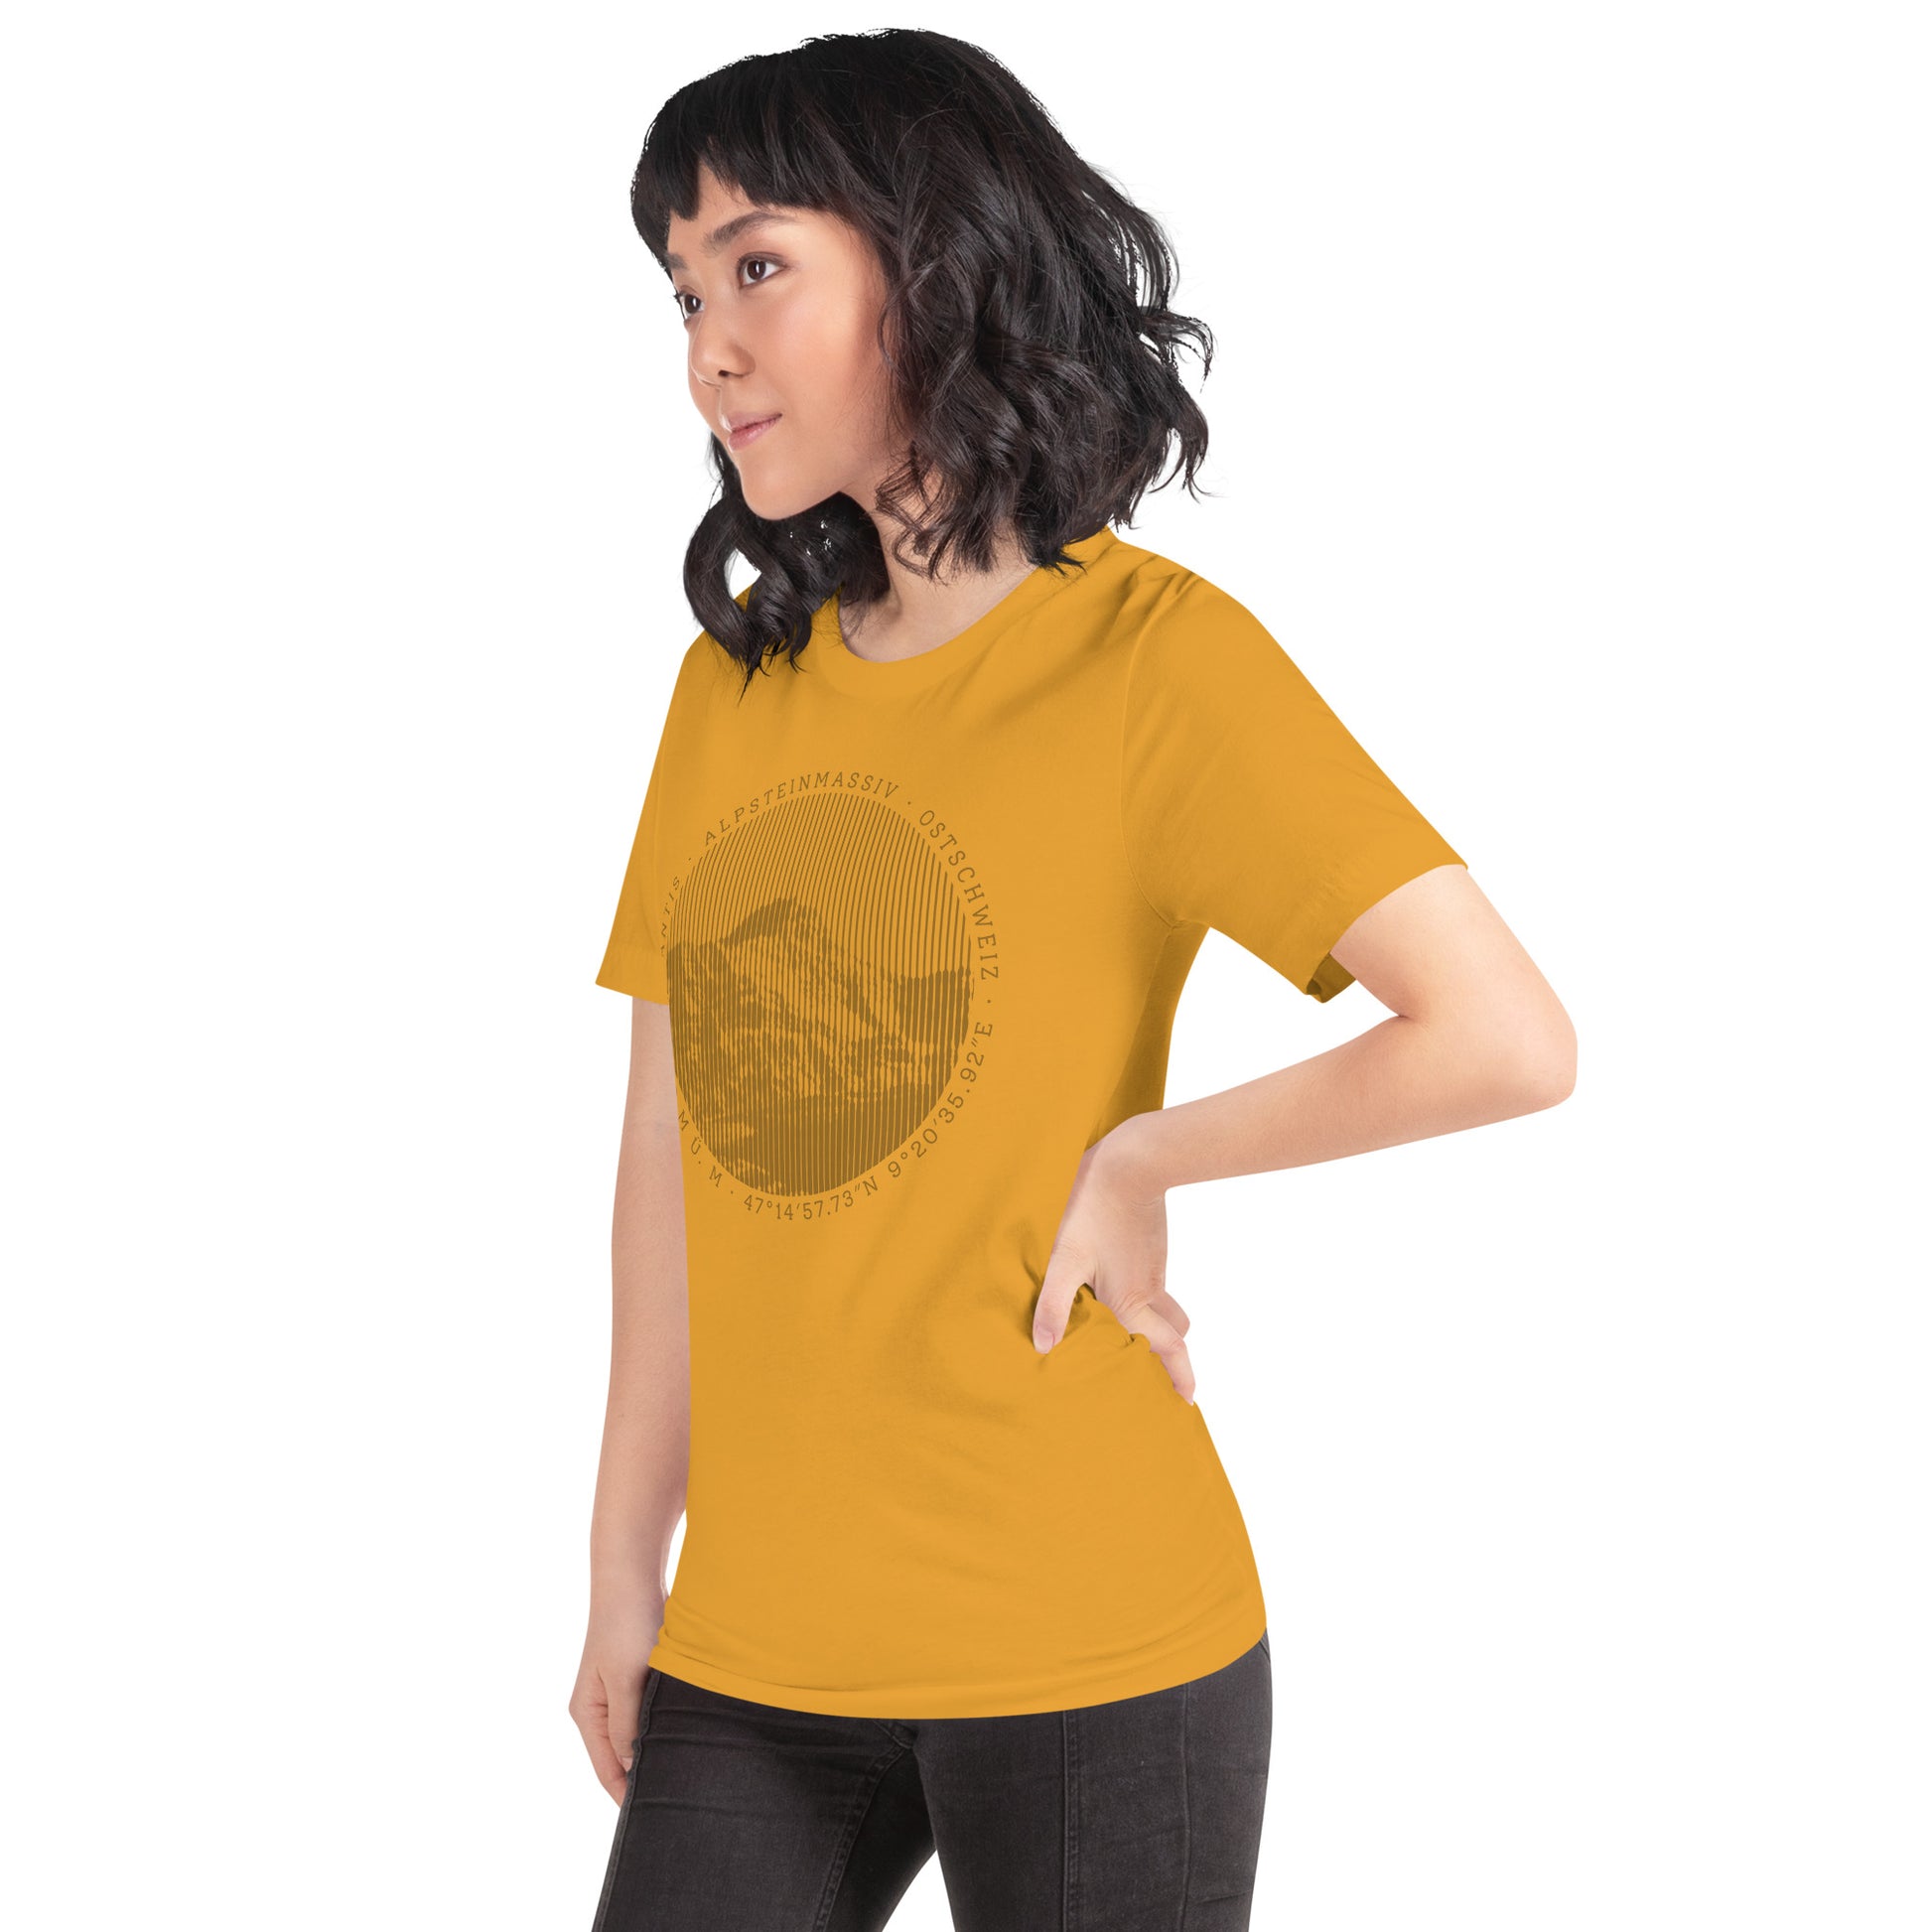 Diese Naturfreundin trägt ein senffarbenes Damen T-Shirt von Vallada mit einem Aufdruck des Säntis-Gipfels. Dieses T-Shirt ist ein Ausdruck ihres Enthusiasmus für die Region des Alpsteins.